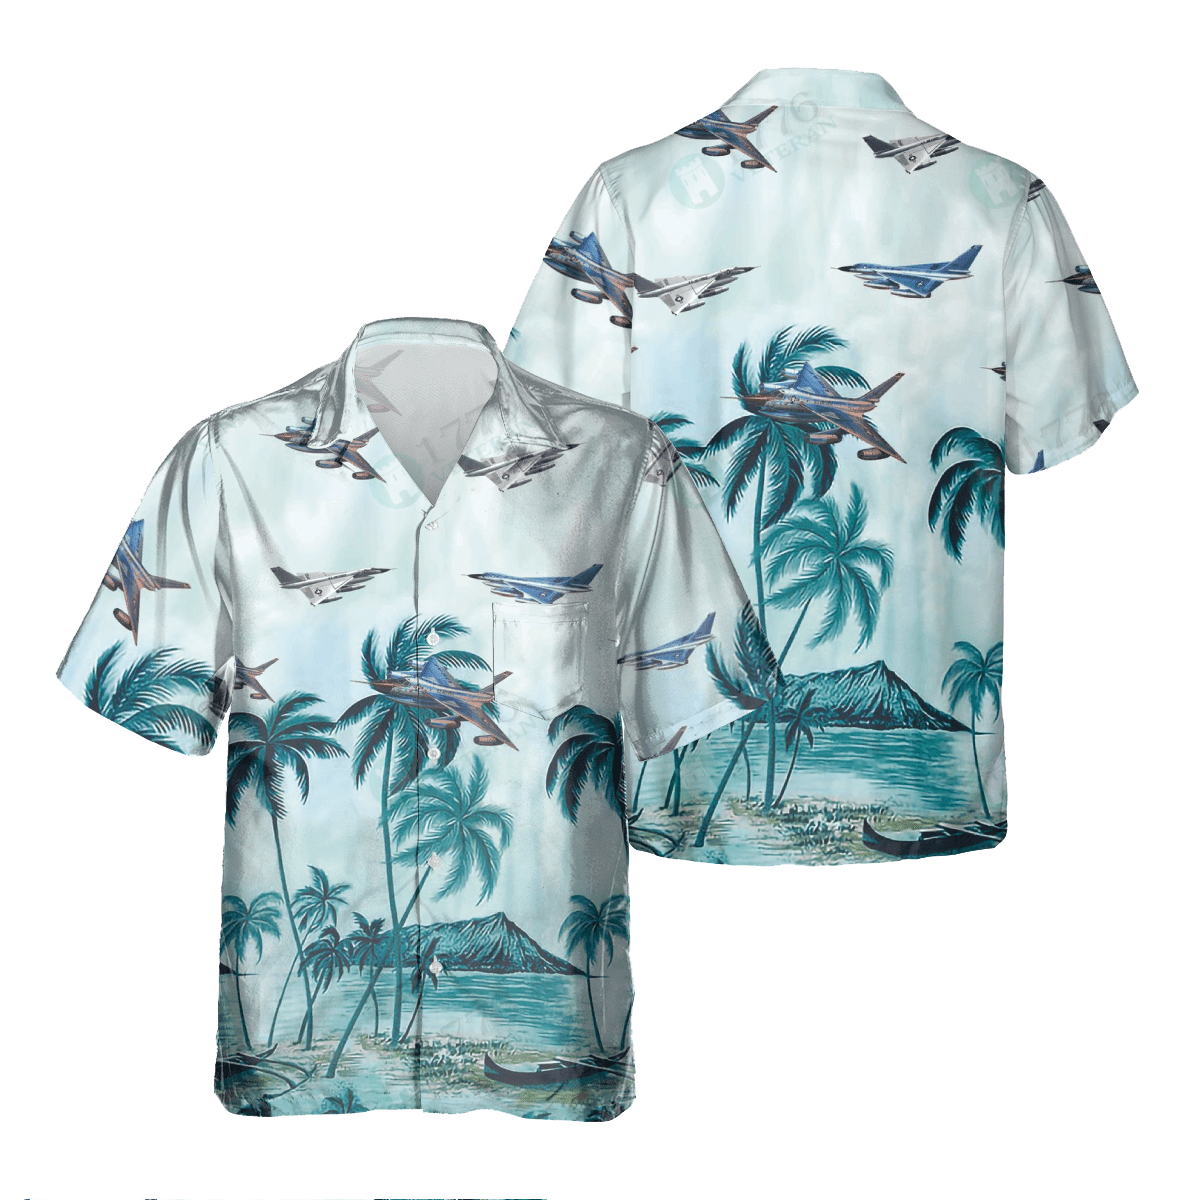 B-58 HUSTLER Pocket Hawaiian Shirt/ Hawaiian Shirt for Men Dad Veteran/ Patriot Day